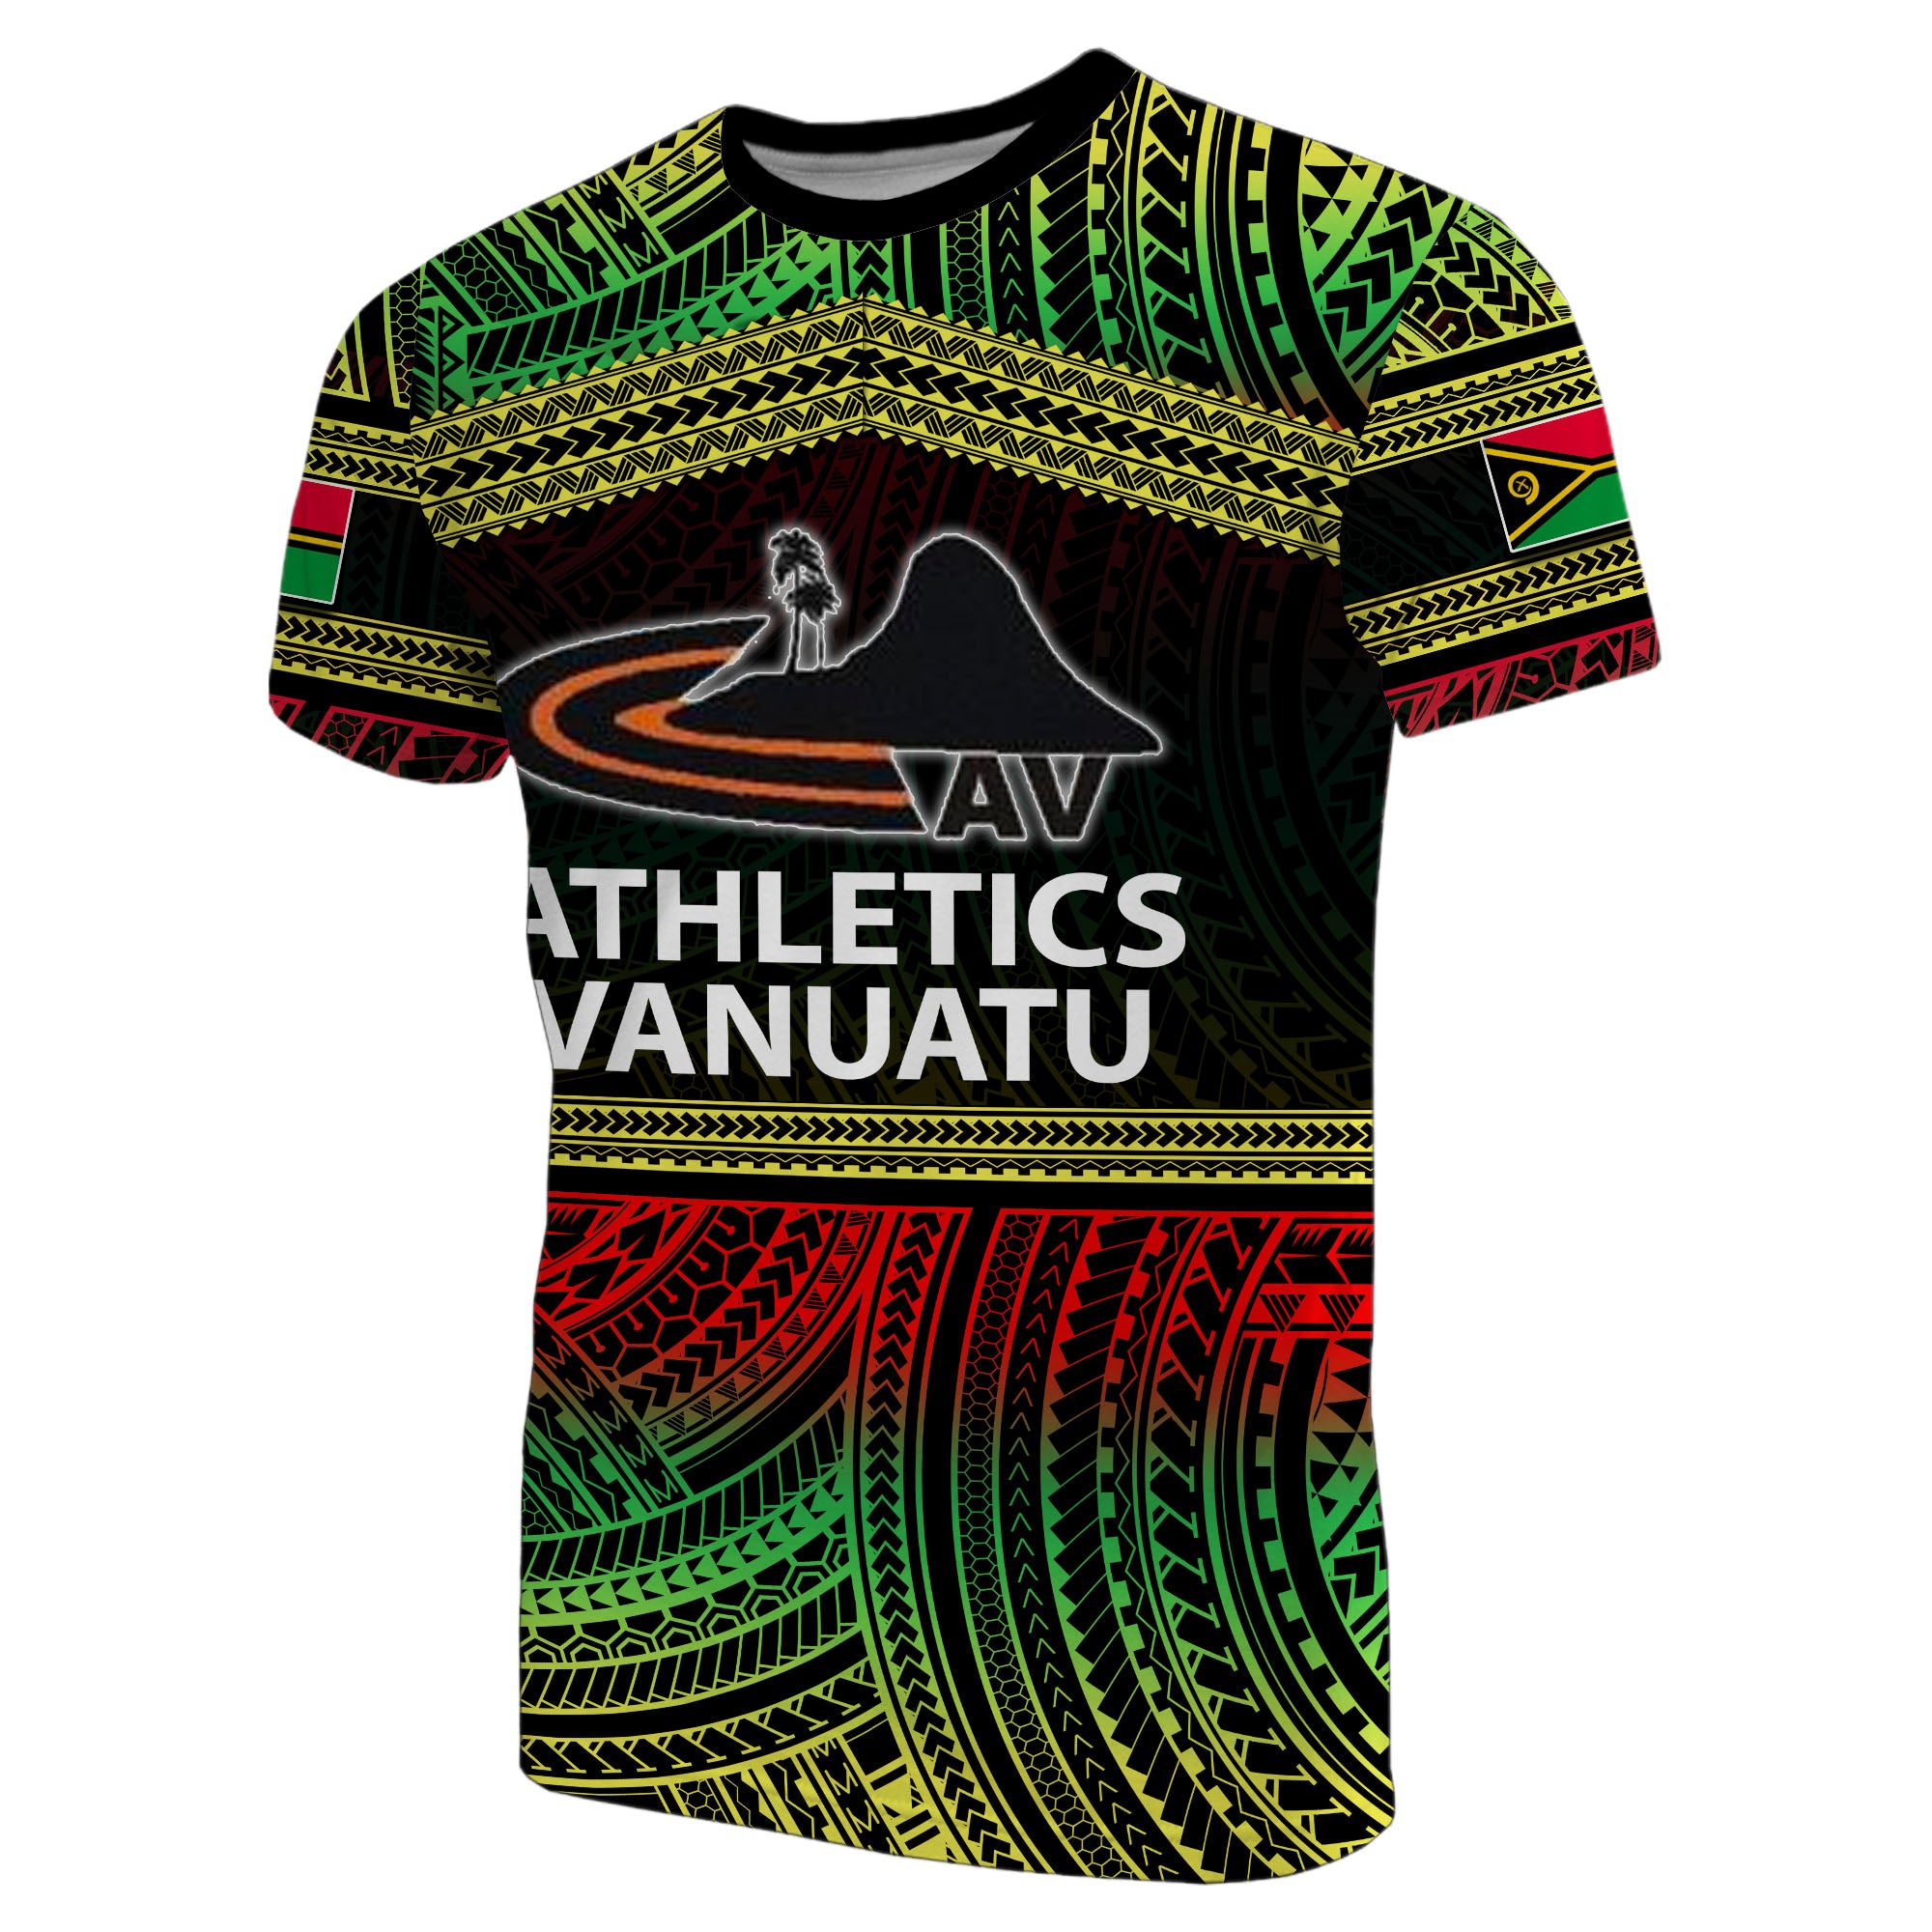 (Custom Personalised) Athletics Vanuatu T Shirt Of Vanuatu Polynesian Patterns Lt6